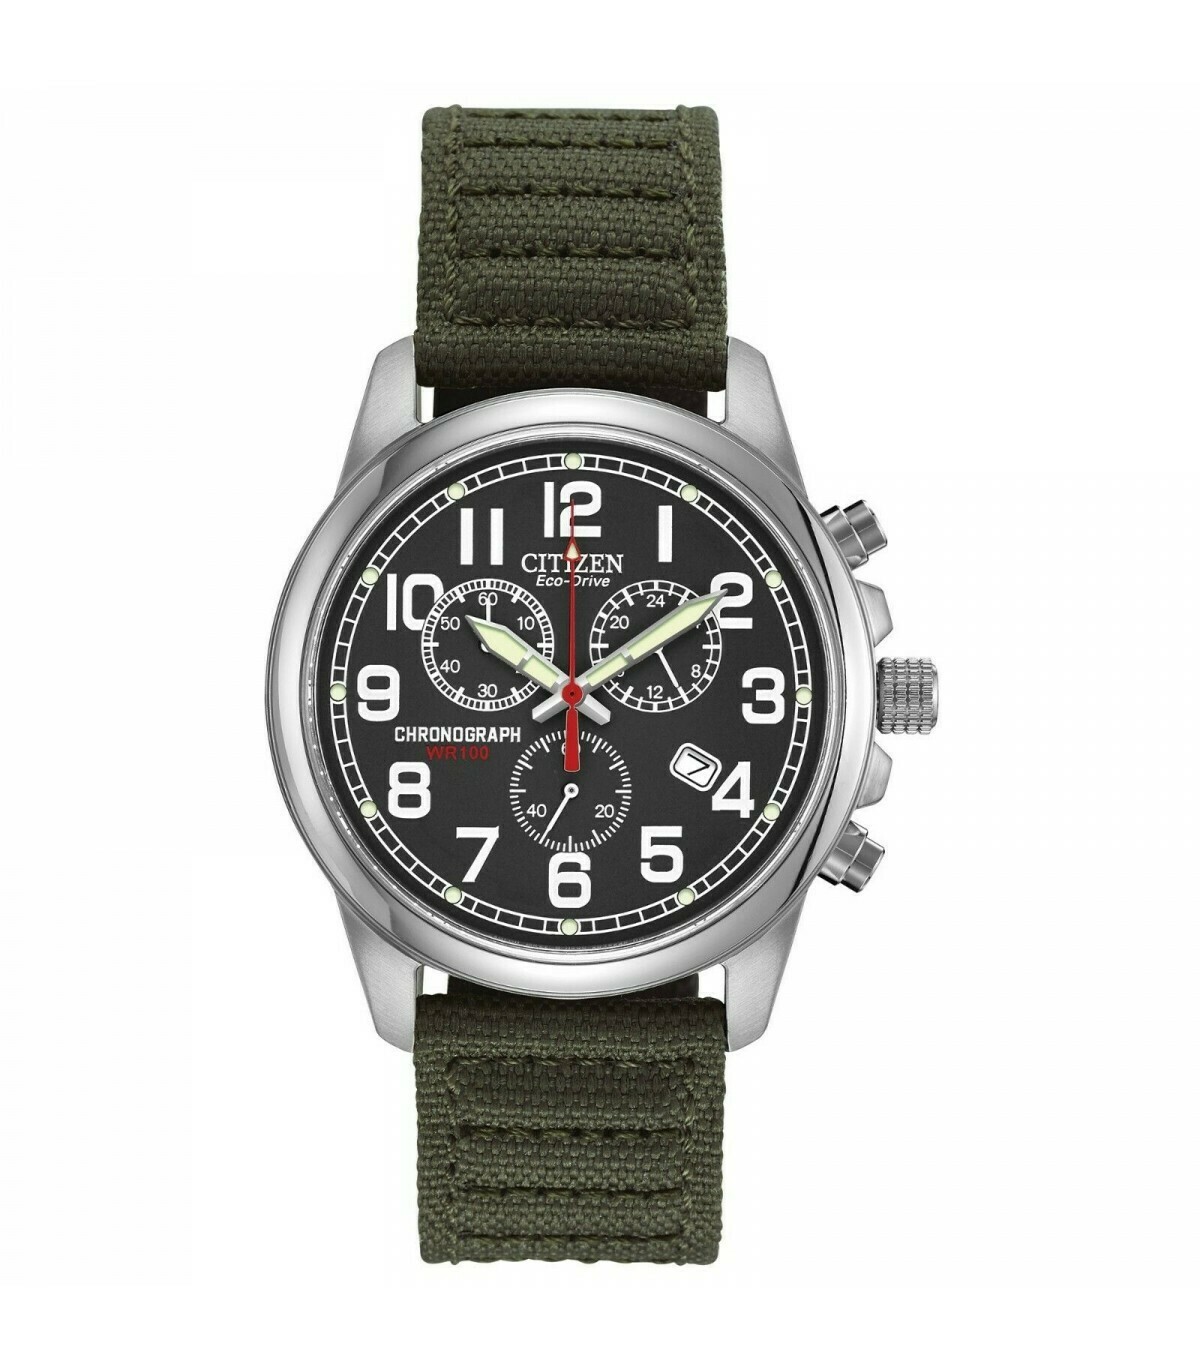 Reloj Automático hombre Citizen Eco-Drive Chandler AT0200-05E correa tela Men's Chronograph Green Canvas Strap 39mm Watch